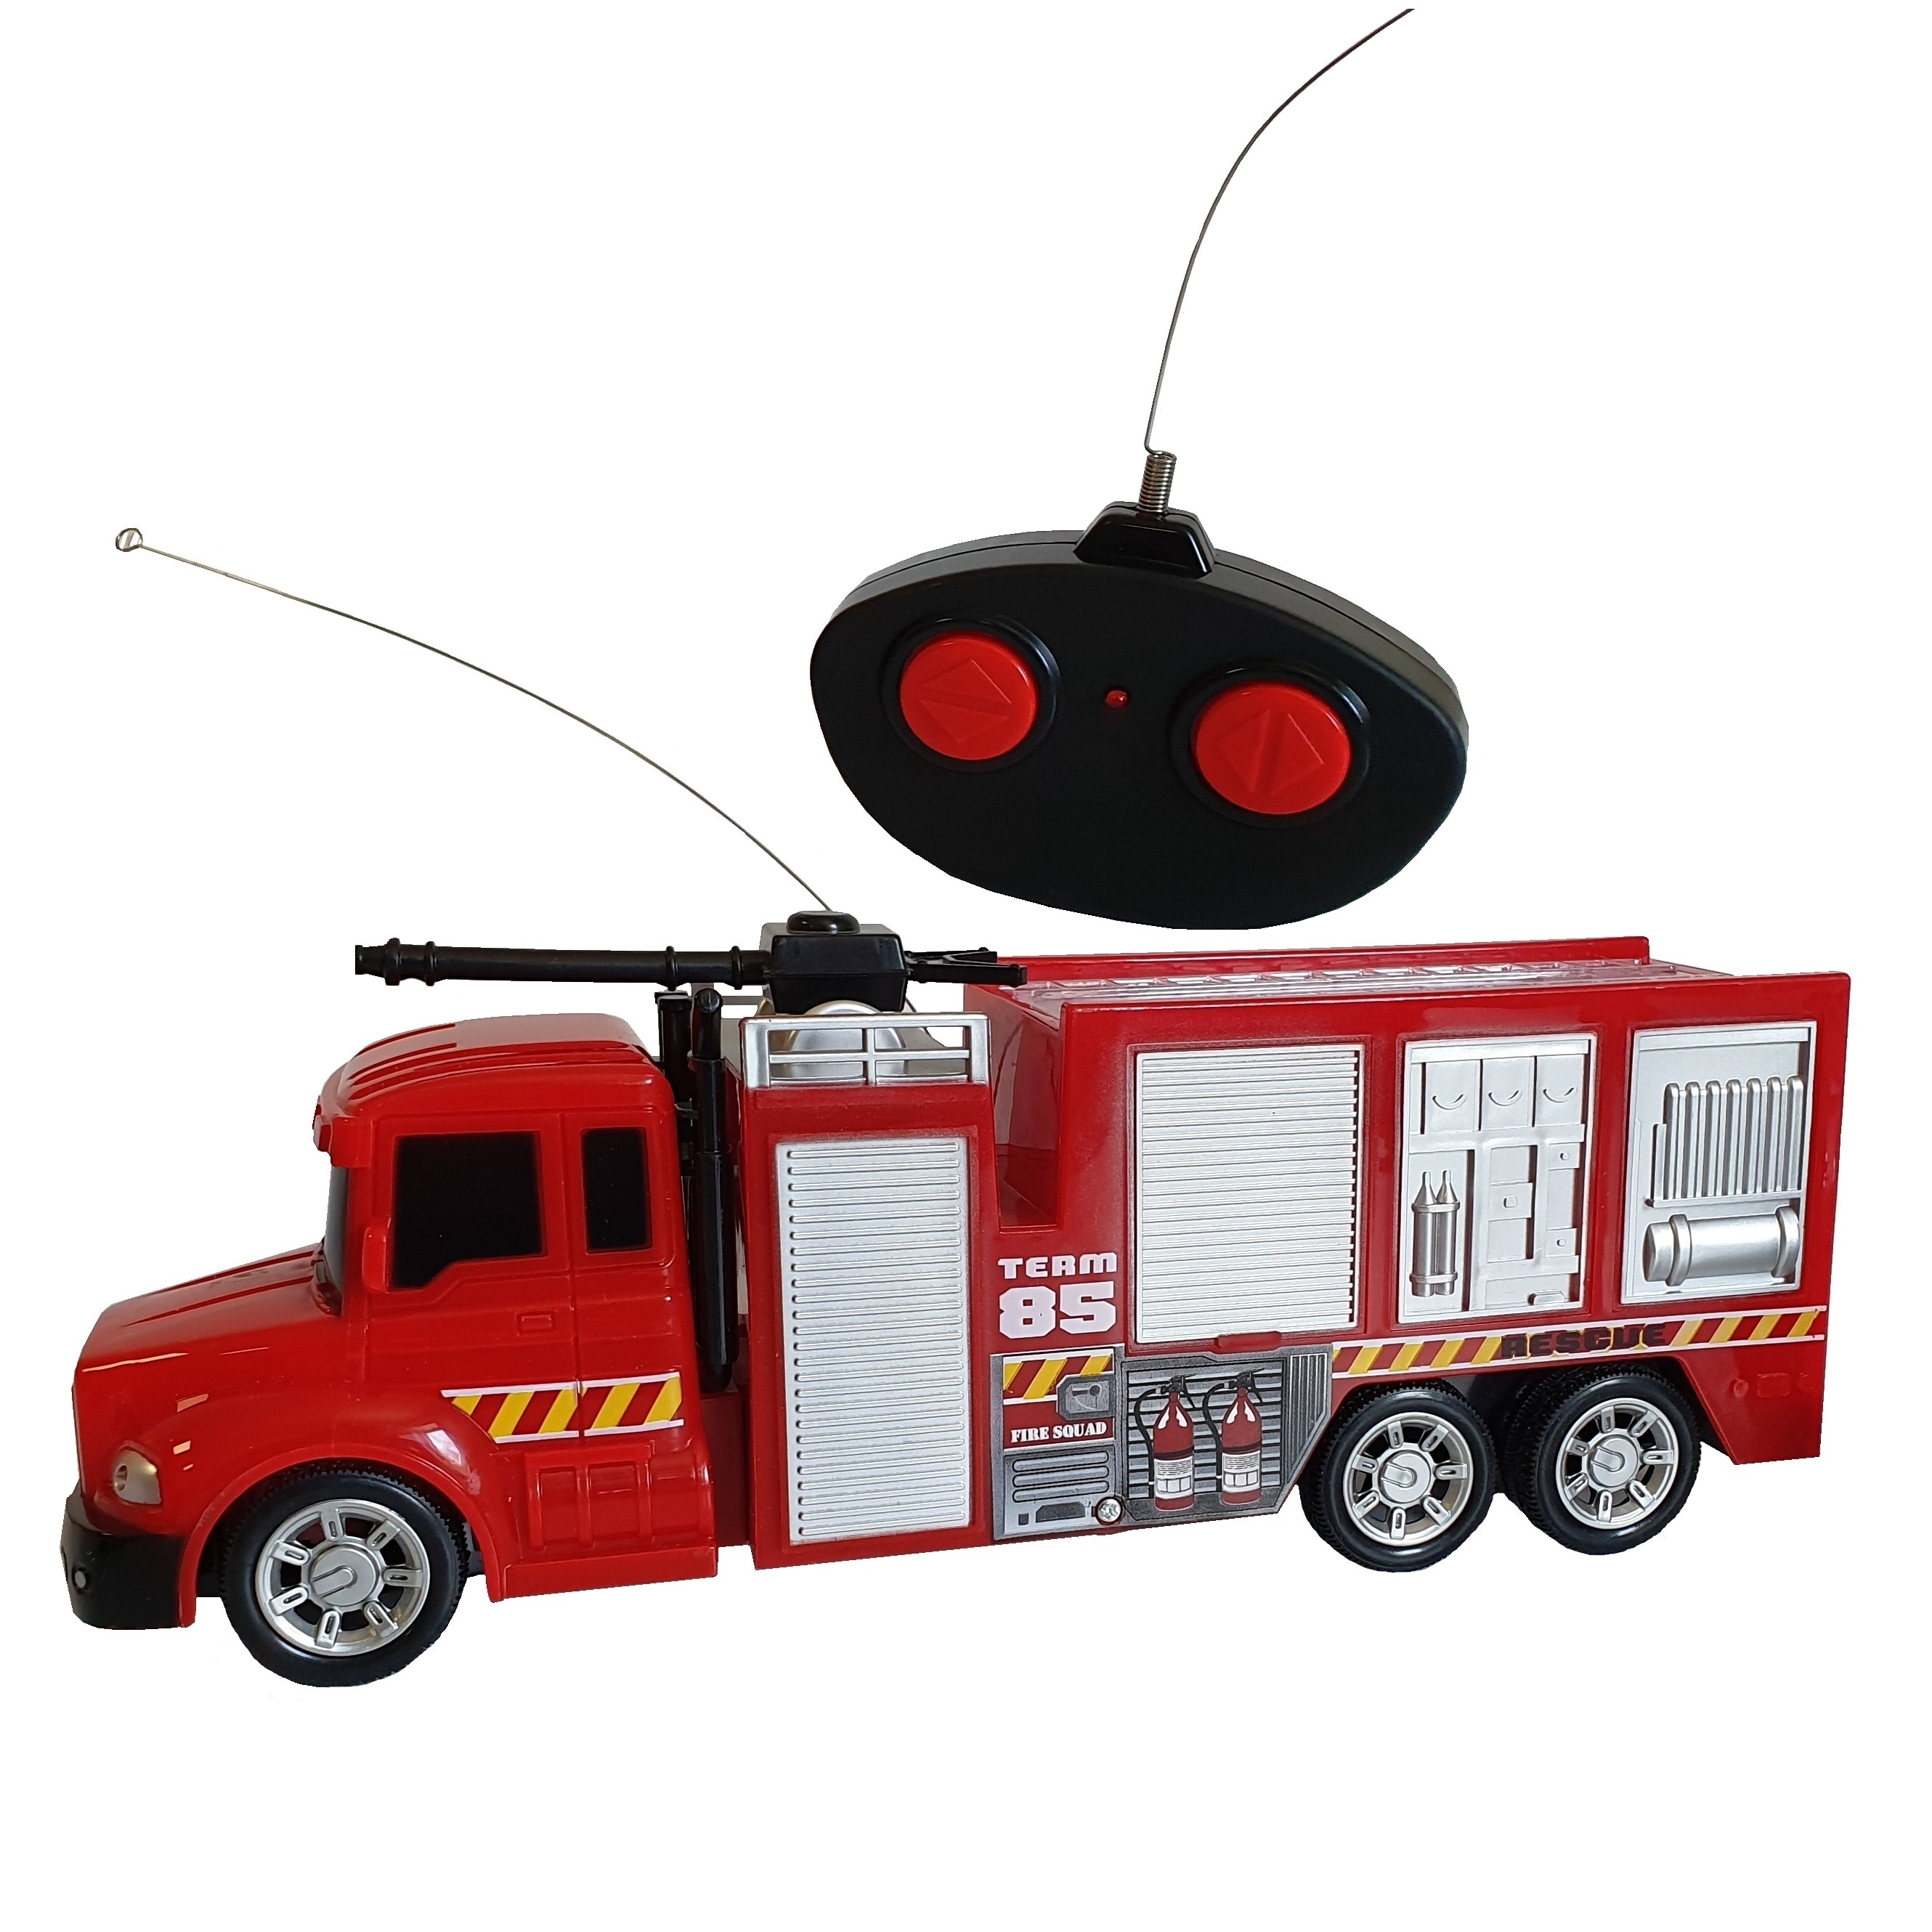 Masina de pompieri cu radio control, lungime 30 cm, sunete si lumini, vireaza stanga, dreapta articole imagine 2022 protejamcopilaria.ro